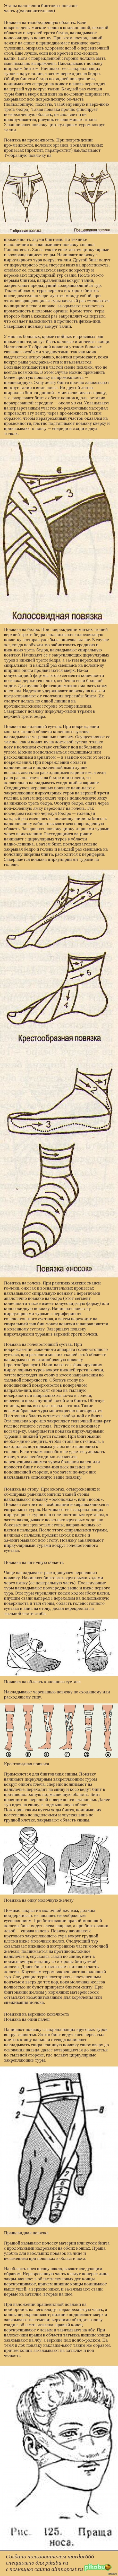       4()  1 <a href="http://pikabu.ru/story/yetapyi_nalozheniya_bintovyikh_povyazok_2125661">http://pikabu.ru/story/_2125661</a>